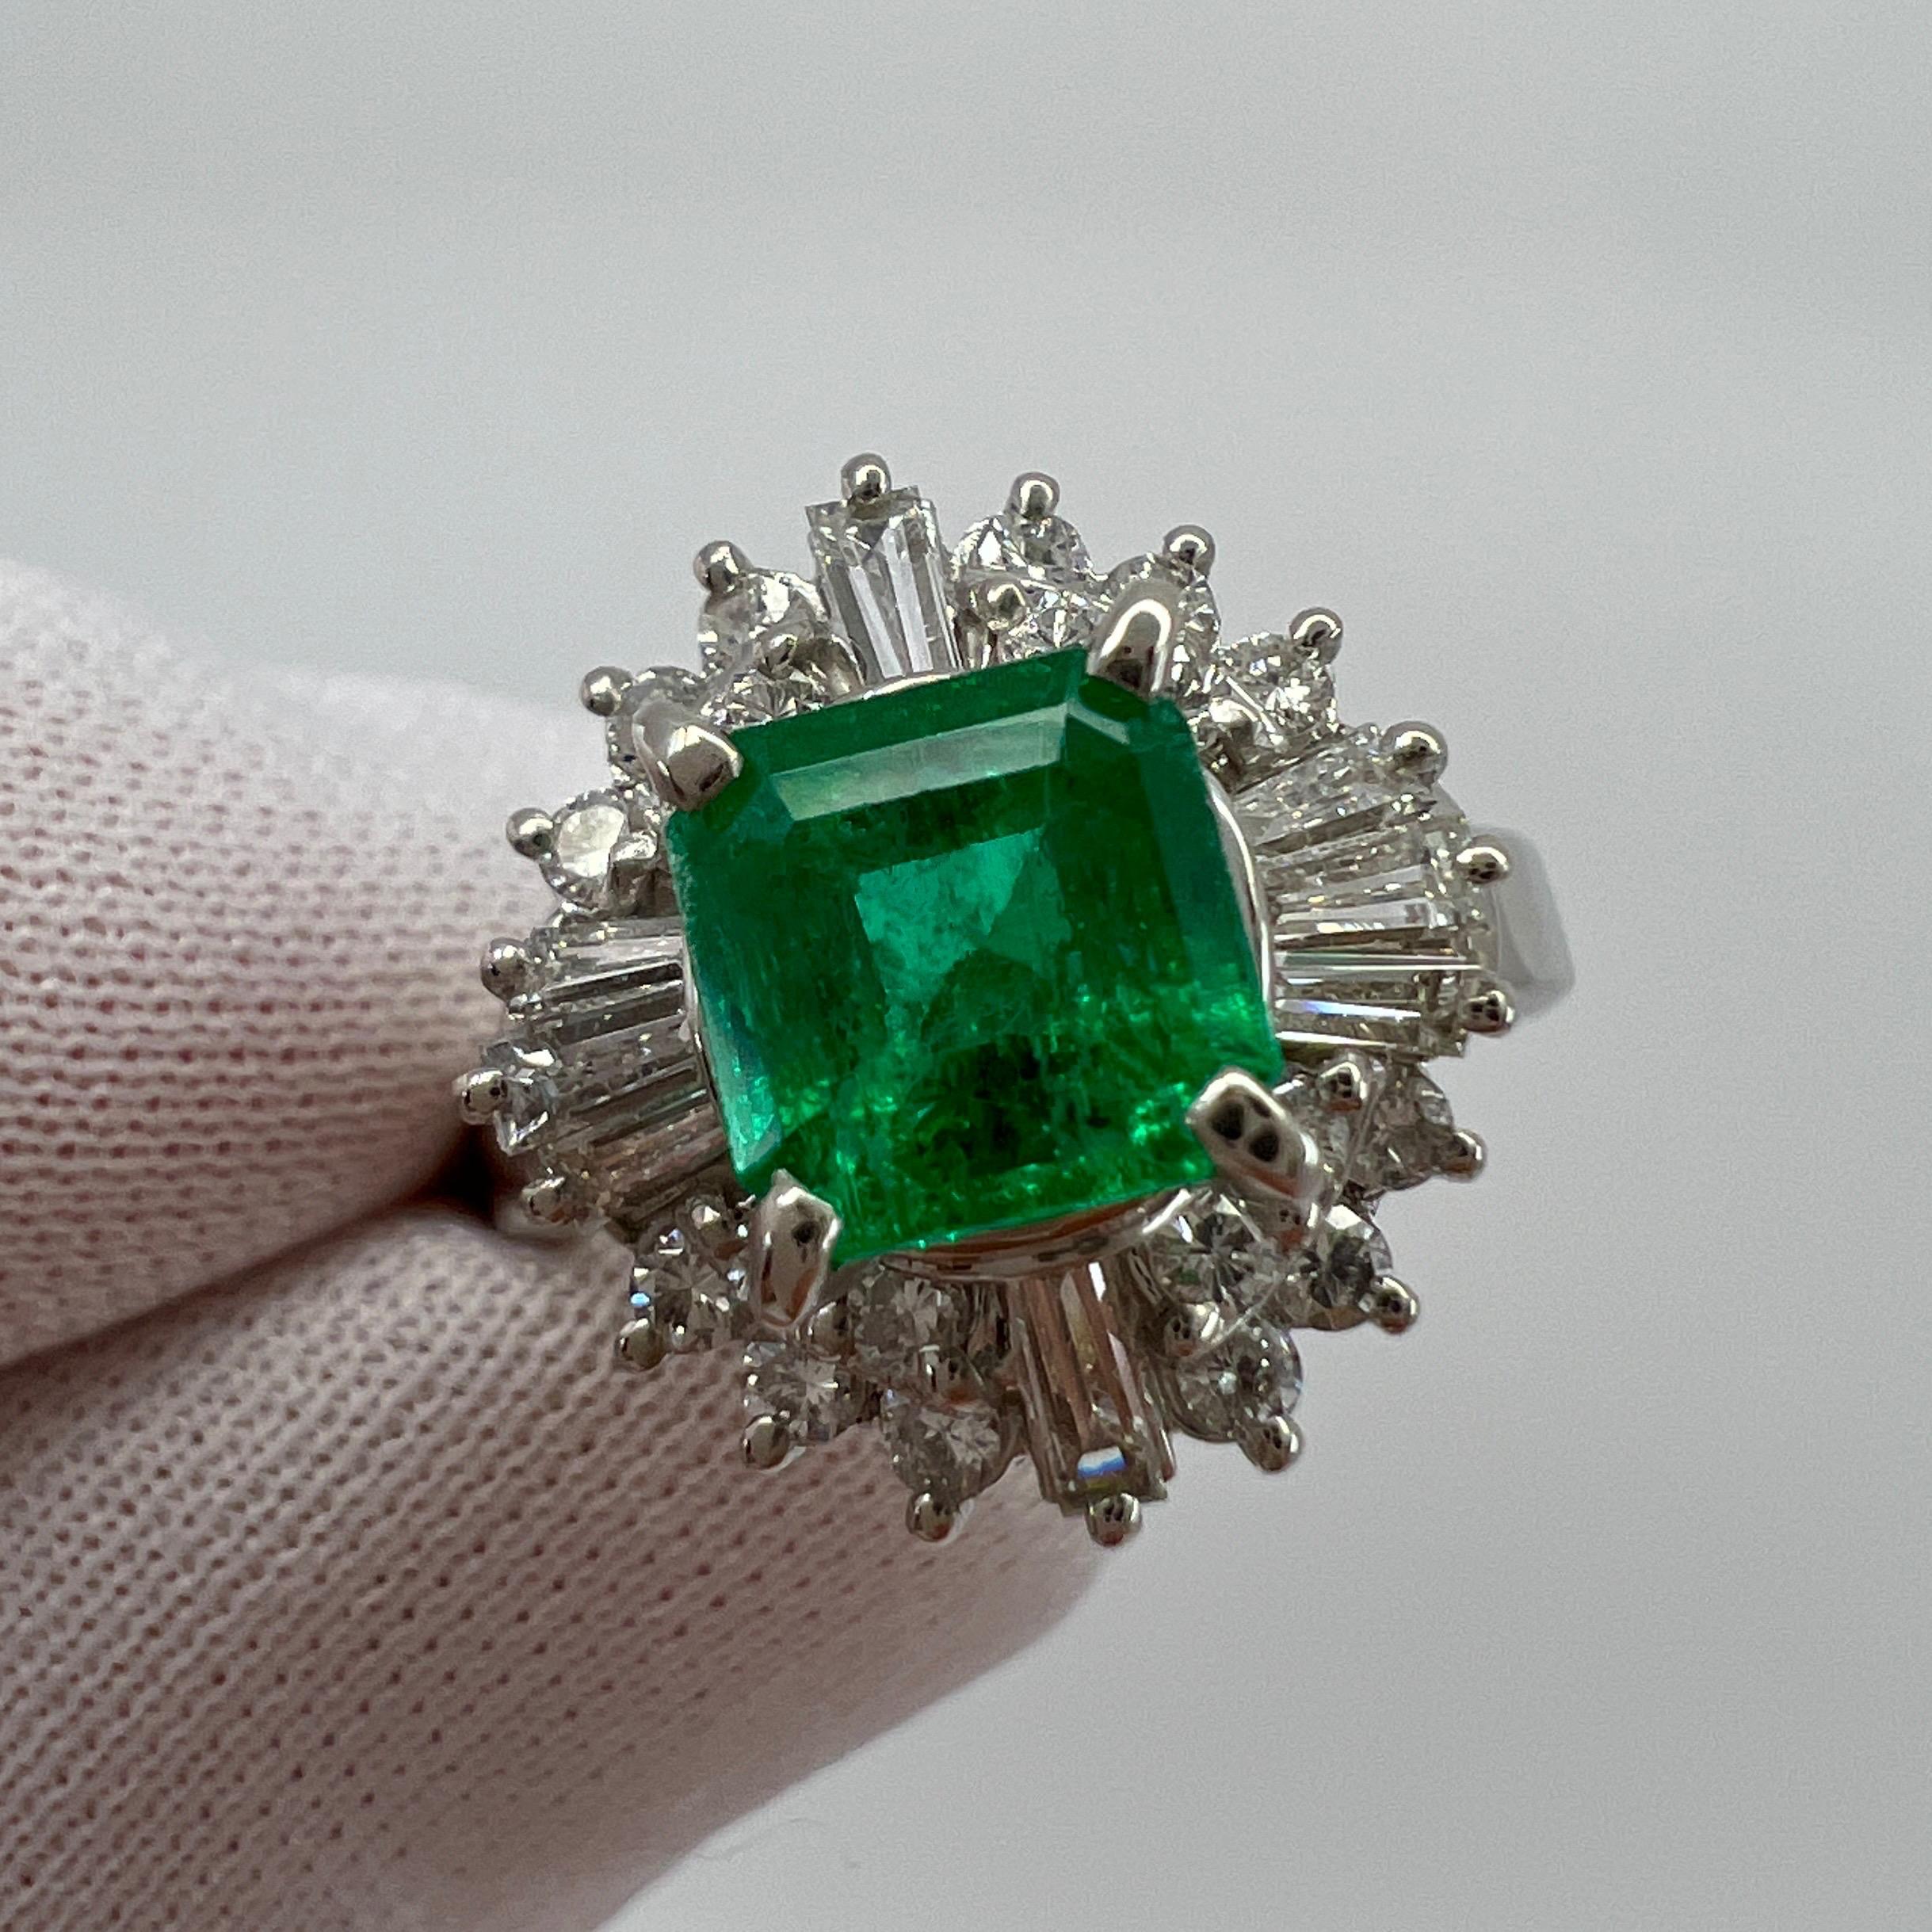 Fine Vivid Green Emerald & Diamond Platinum Halo Cocktail Ring.

1,90 Karat Gesamtgewicht. Atemberaubender kolumbianischer Smaragd von 1,19 Karat mit einer feinen, lebhaften grünen Farbe und einem ausgezeichneten achteckigen Smaragdschliff. Der